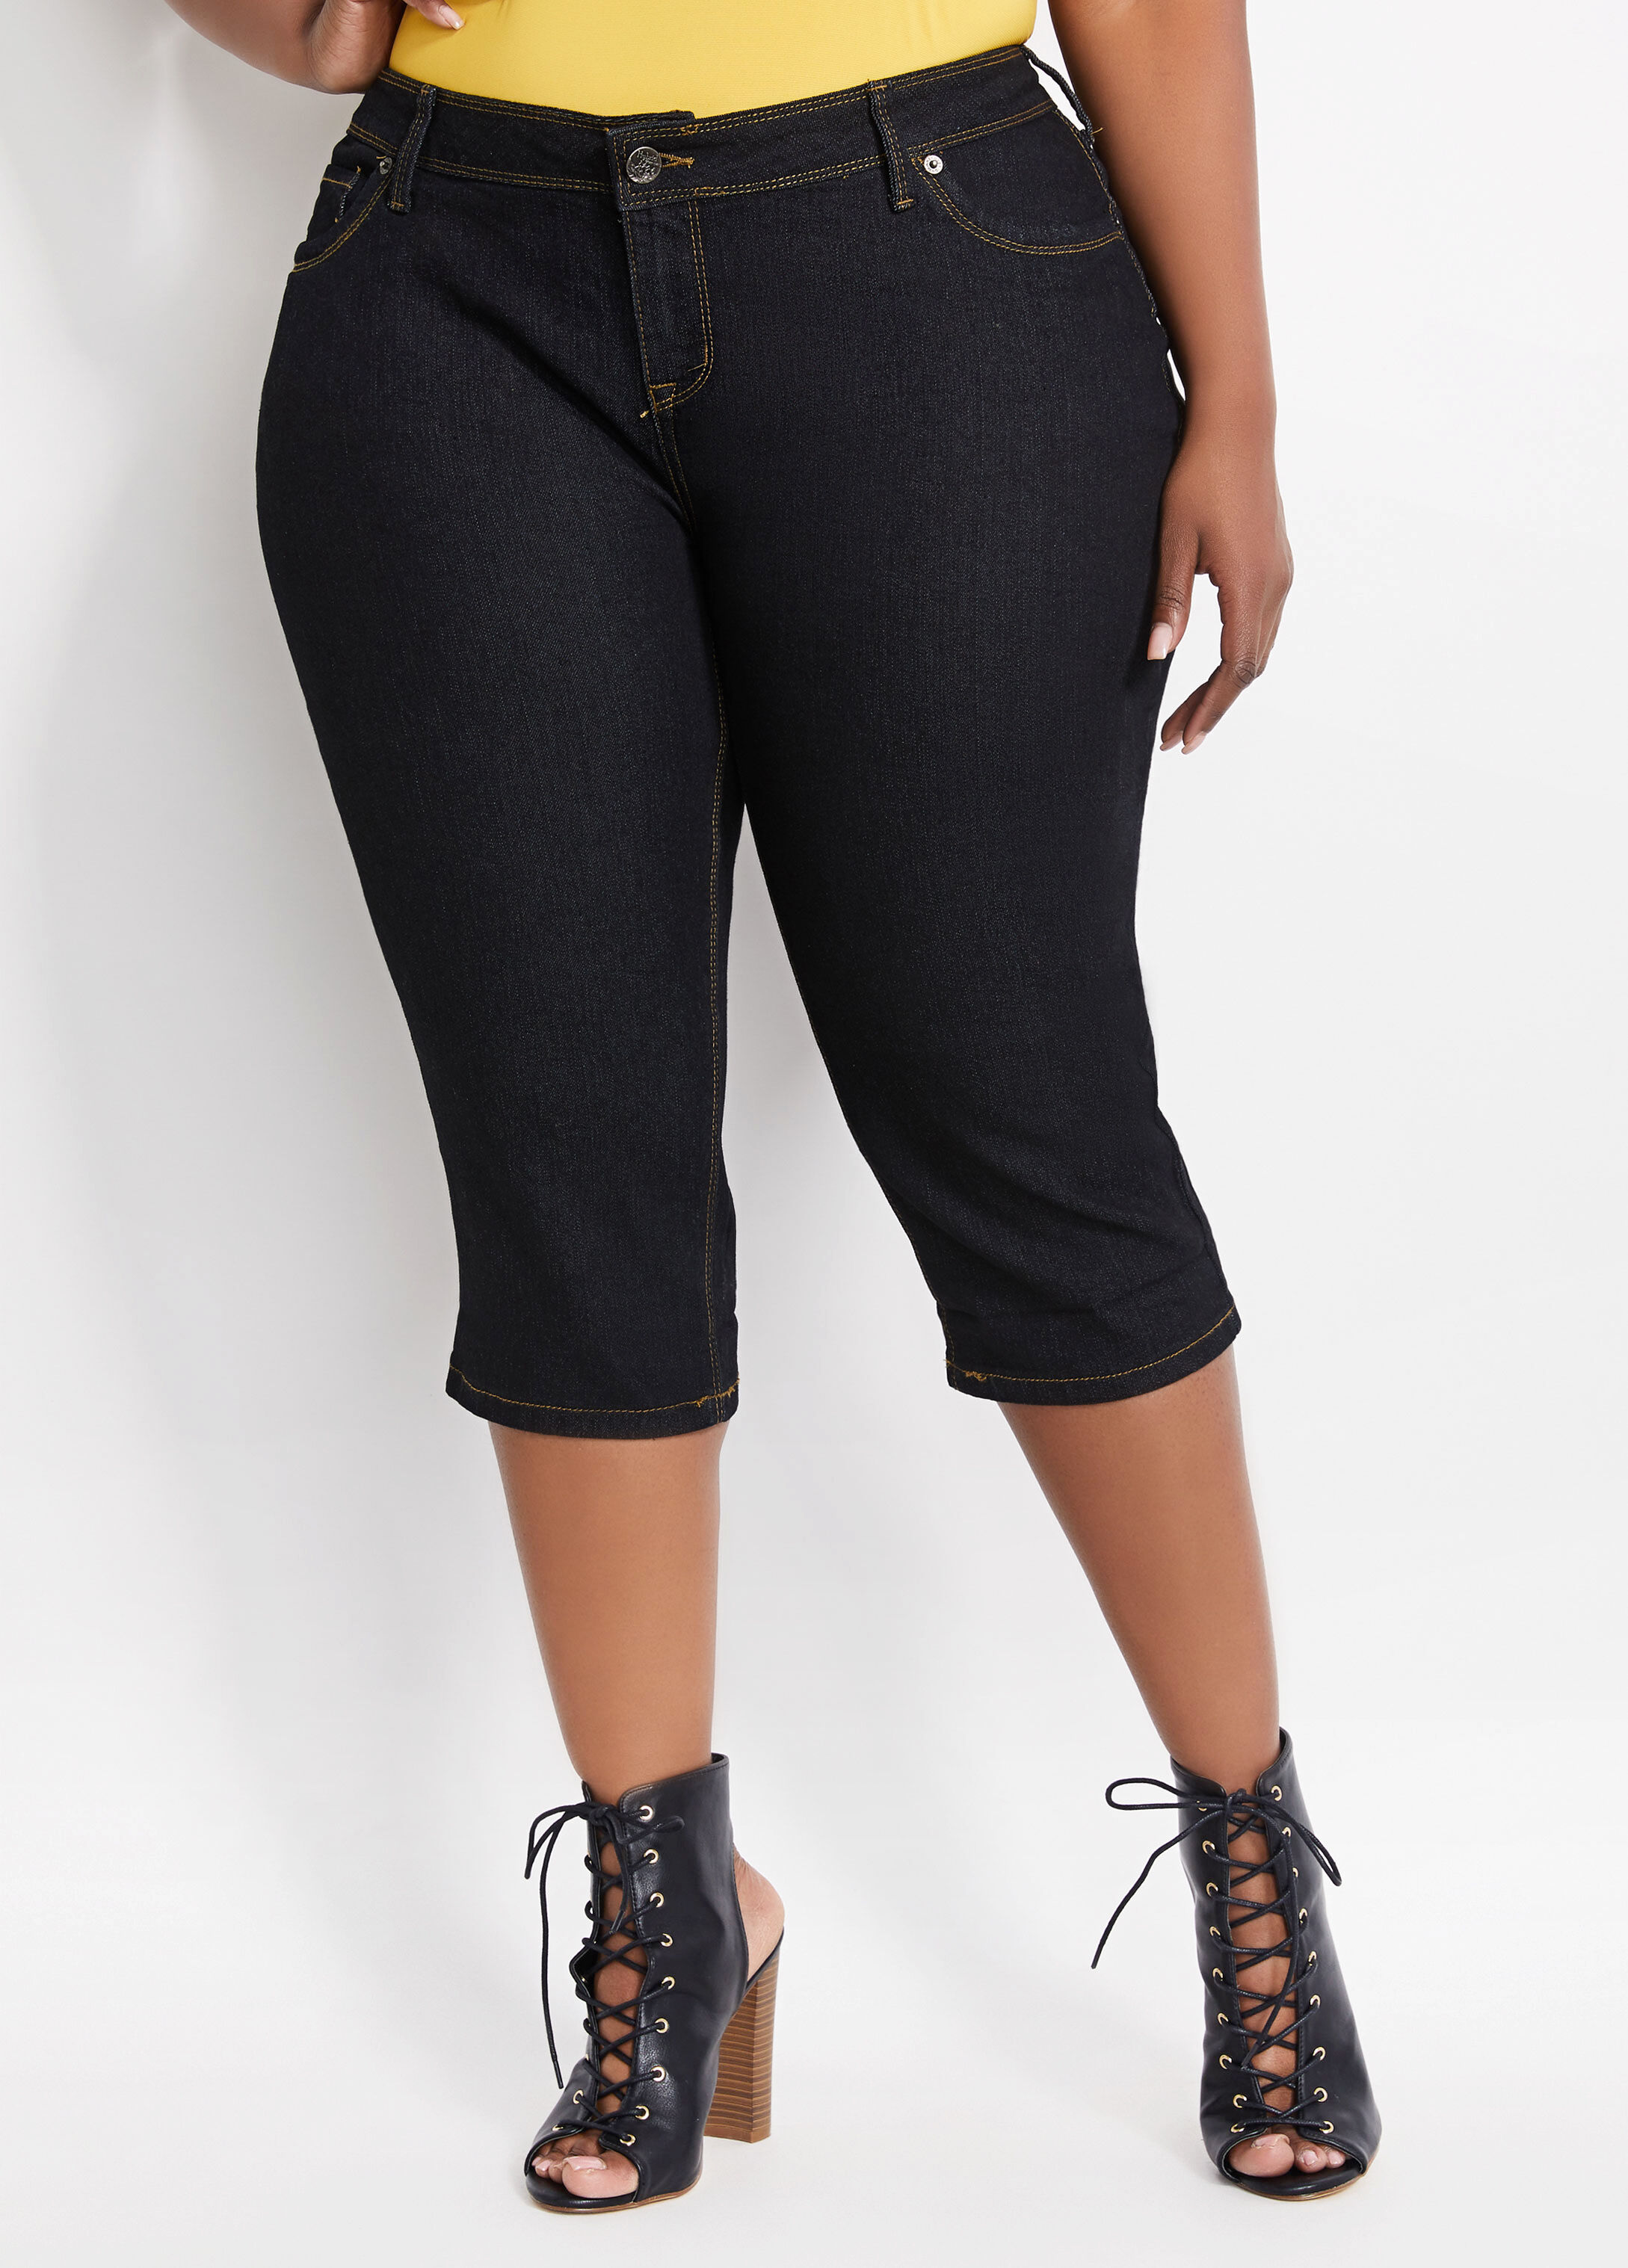 Buy Black Denim Capri Pants for Girls Women Online  450 from ShopClues